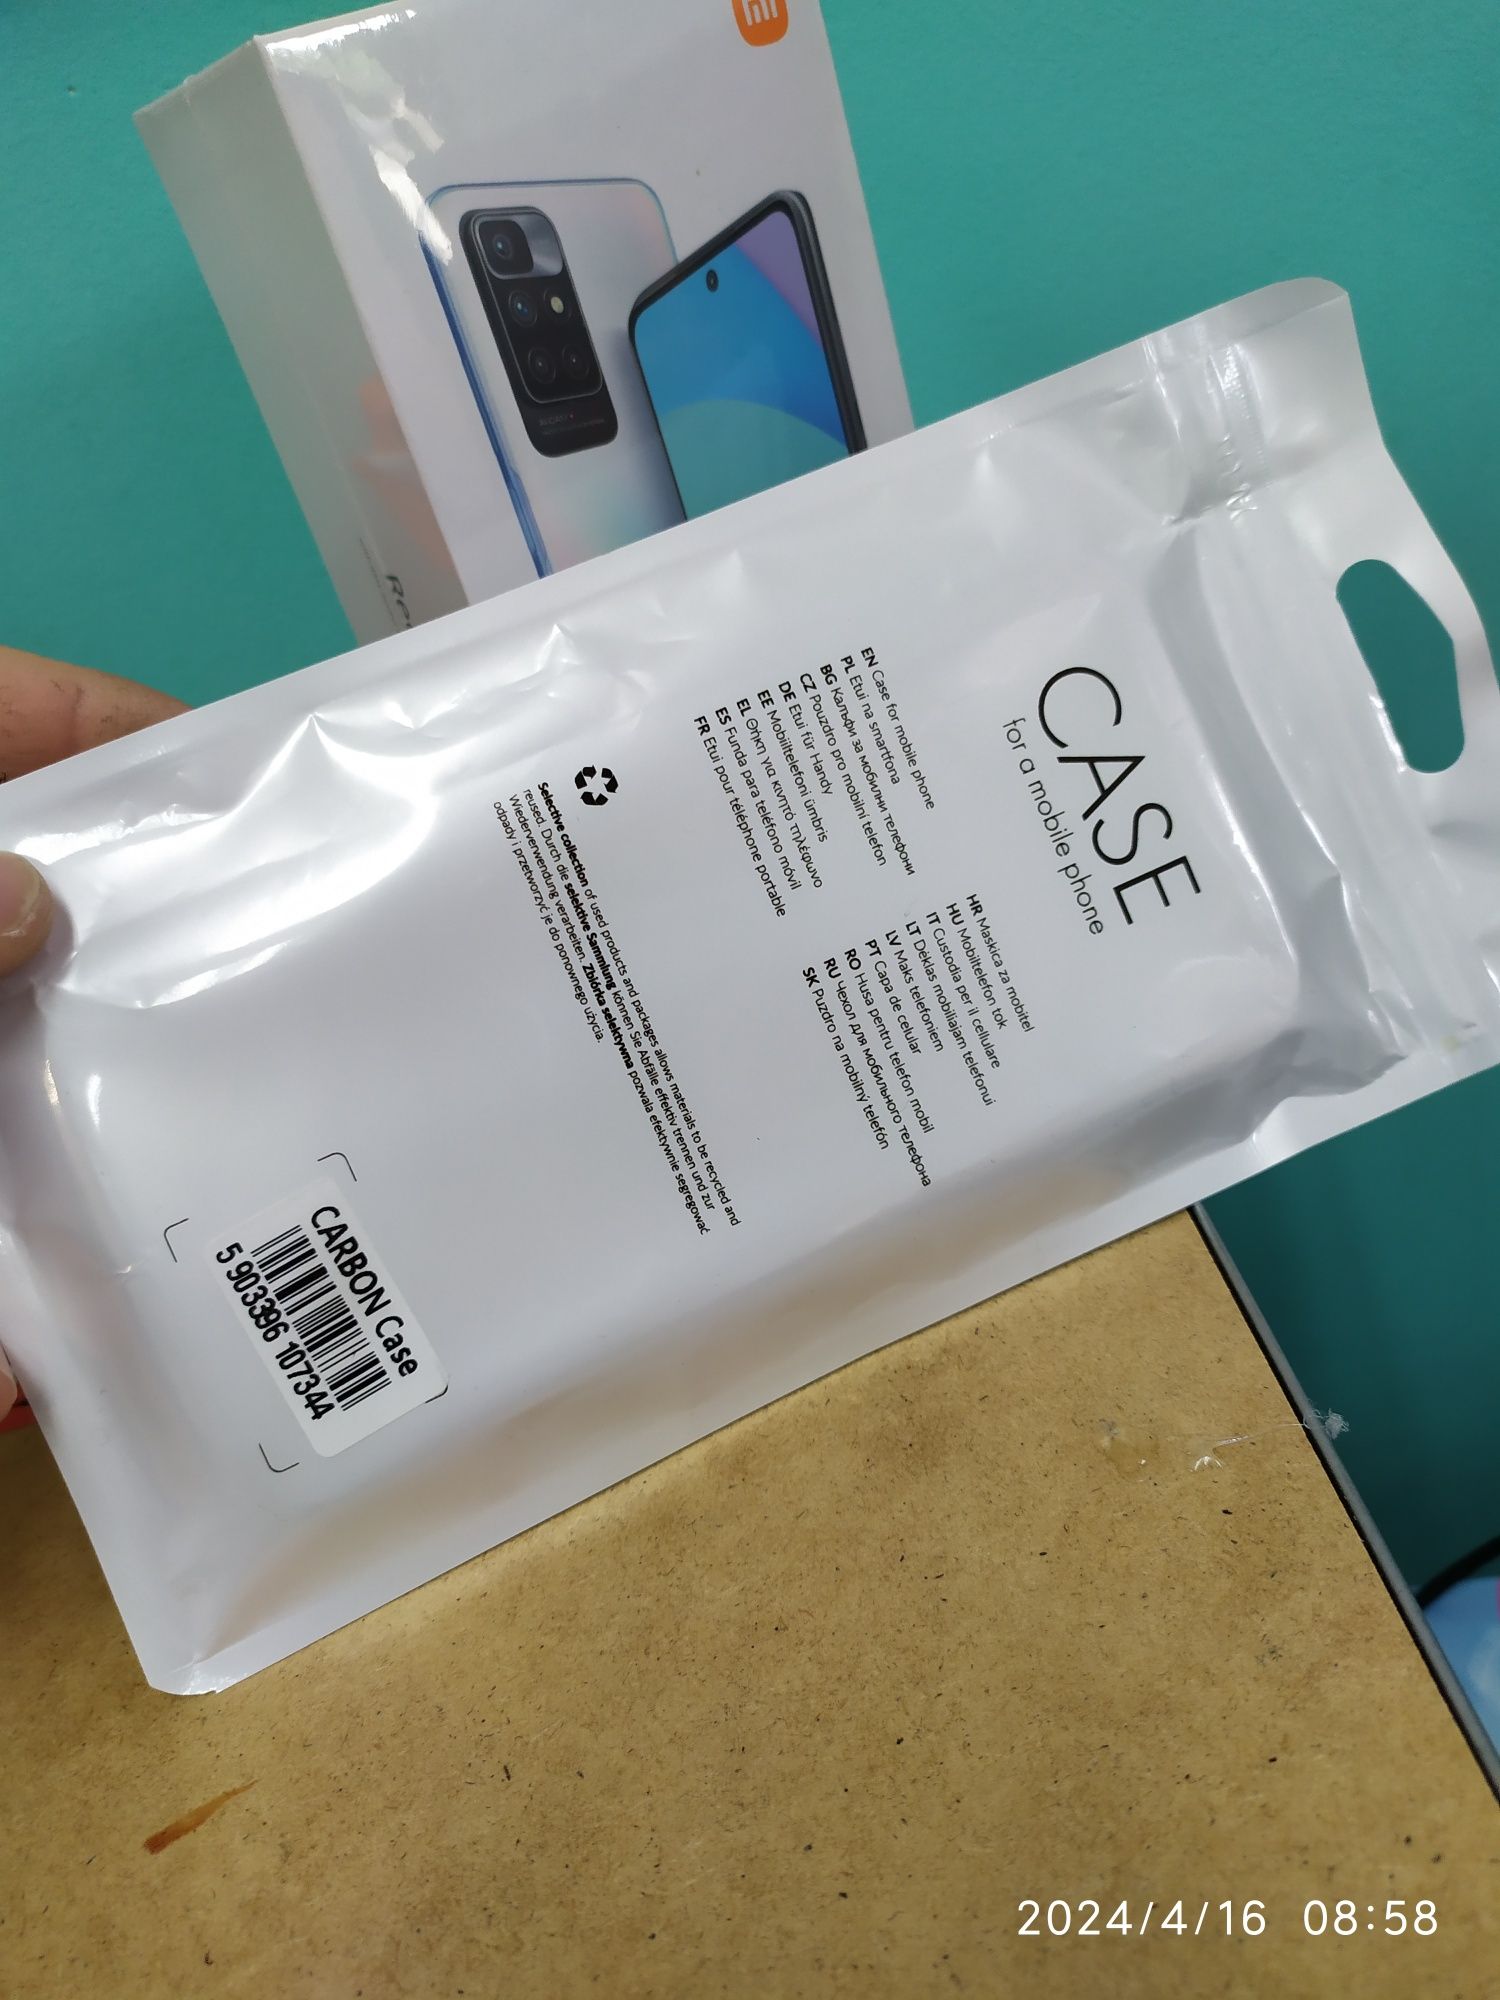 Nowy Xiaomi Redmi 10 2022 model 6/128 Carbon Gray z etui